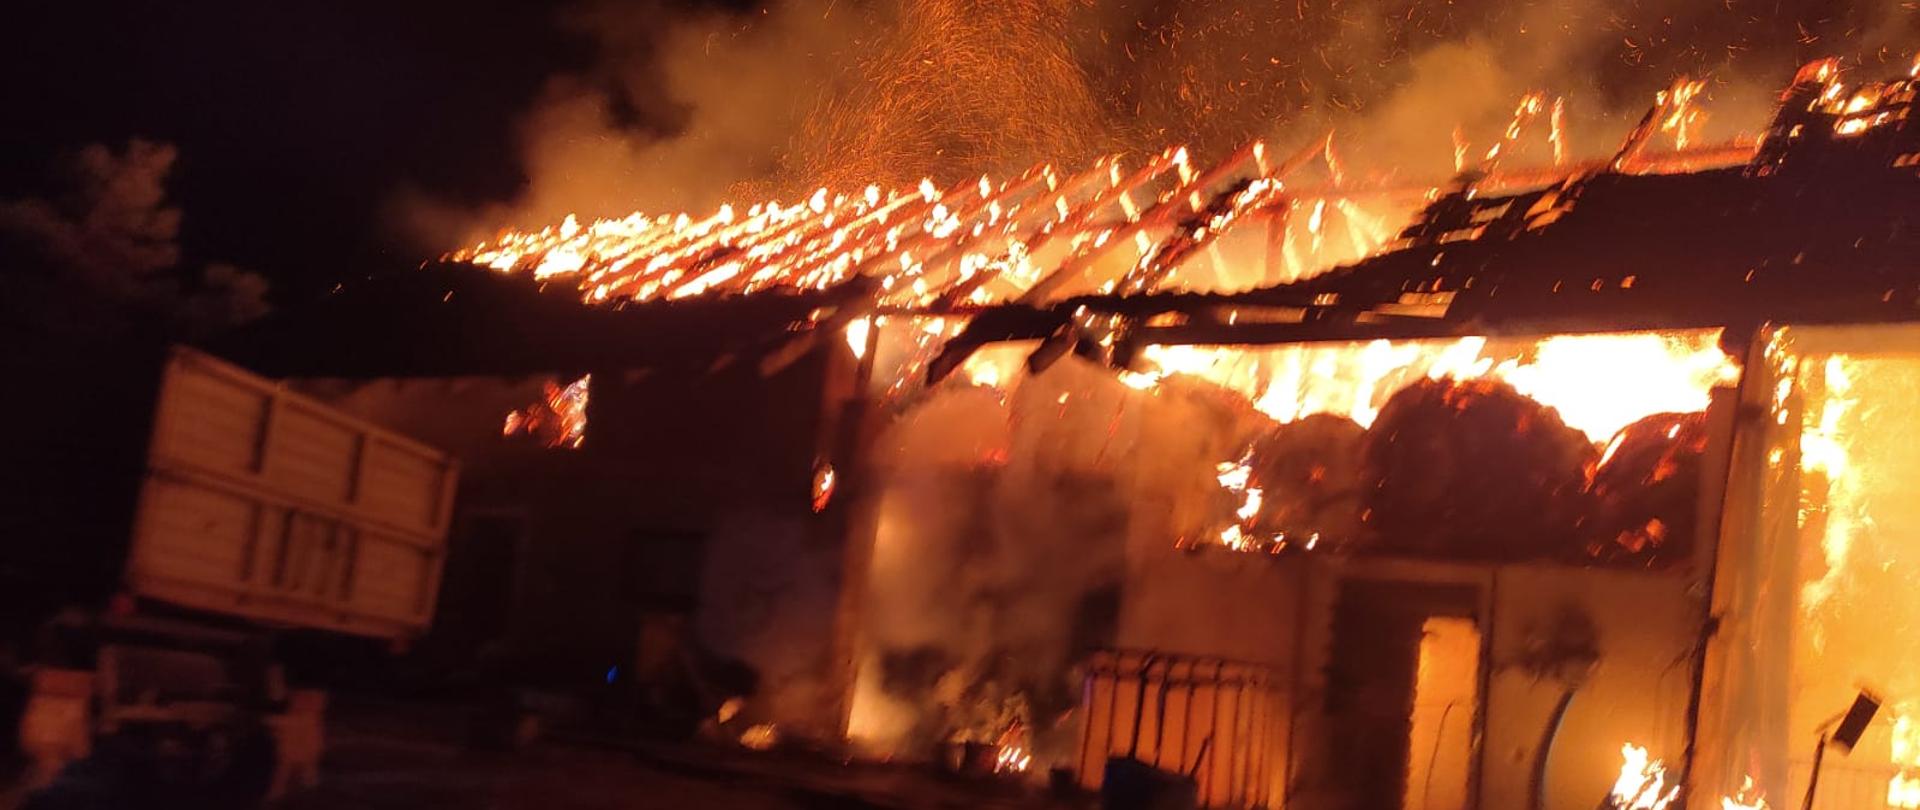 Zdjęcie przedstawia pożar budynku gospodarczego. Jest pora nocna. Na zdjęciu widać że budynek gospodarczy jest cały objęty jest ogniem widać płomienie i dym. Przed budynkiem widać stojącą część przyczepy. 